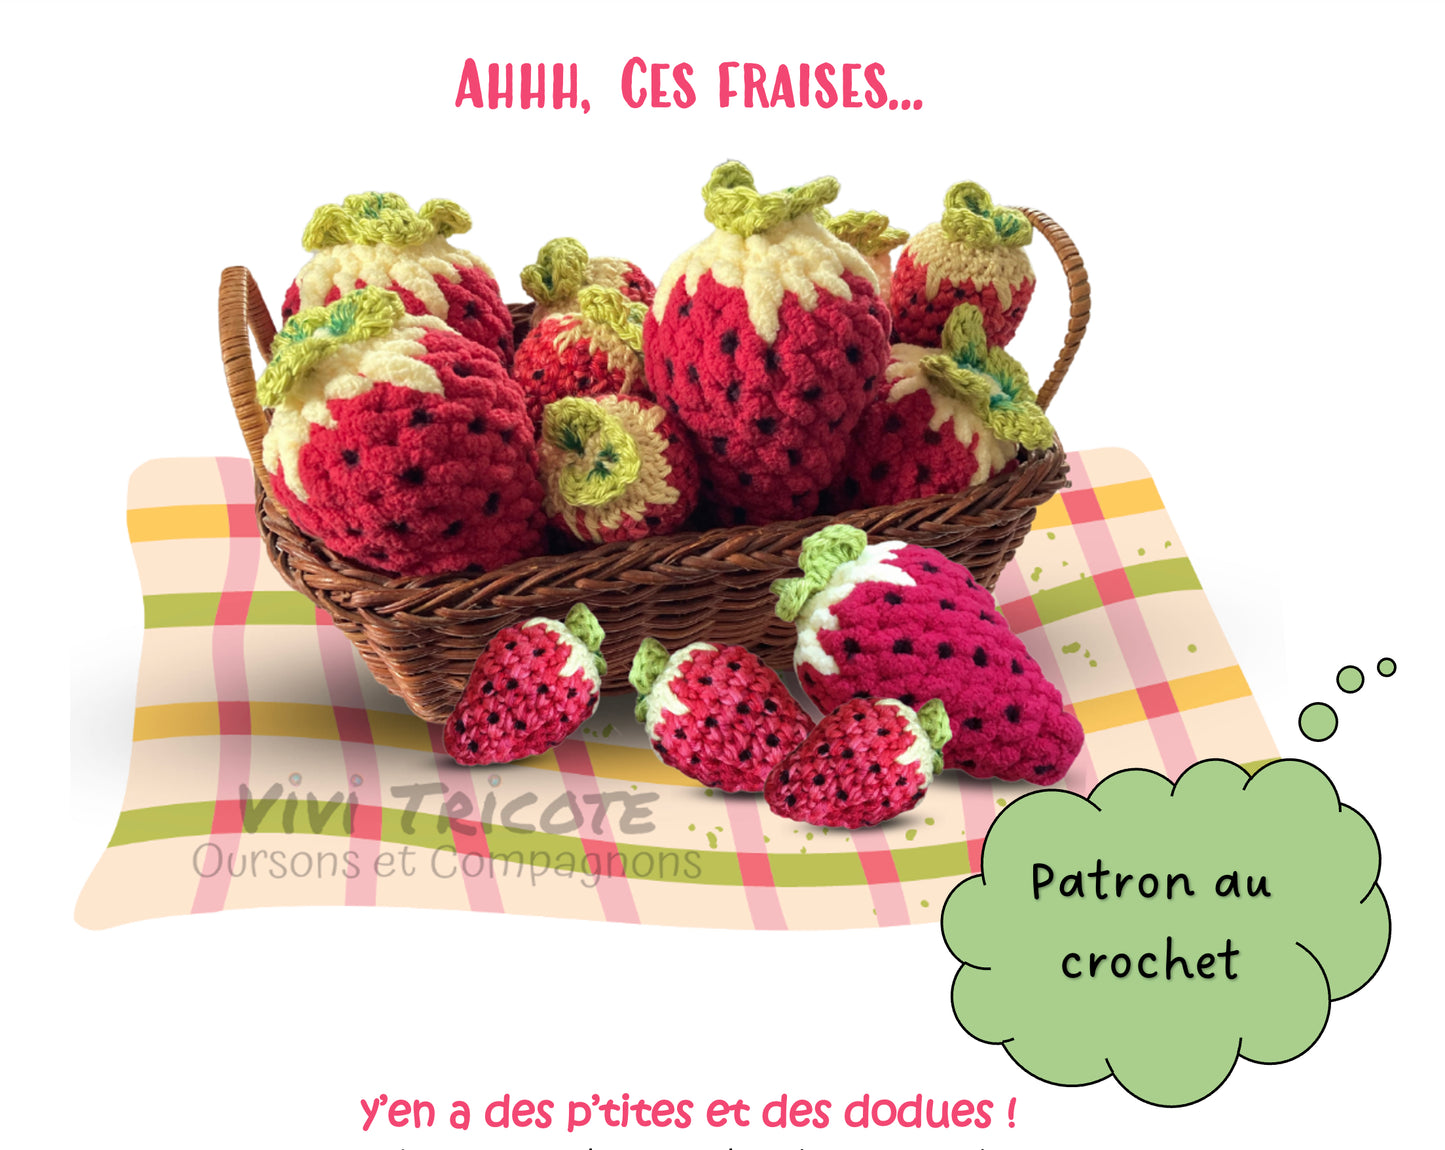 AHHH, CES FRAISES! -  PATRON AU CROCHET à télécharger, tutoriel PDF Français ou anglais